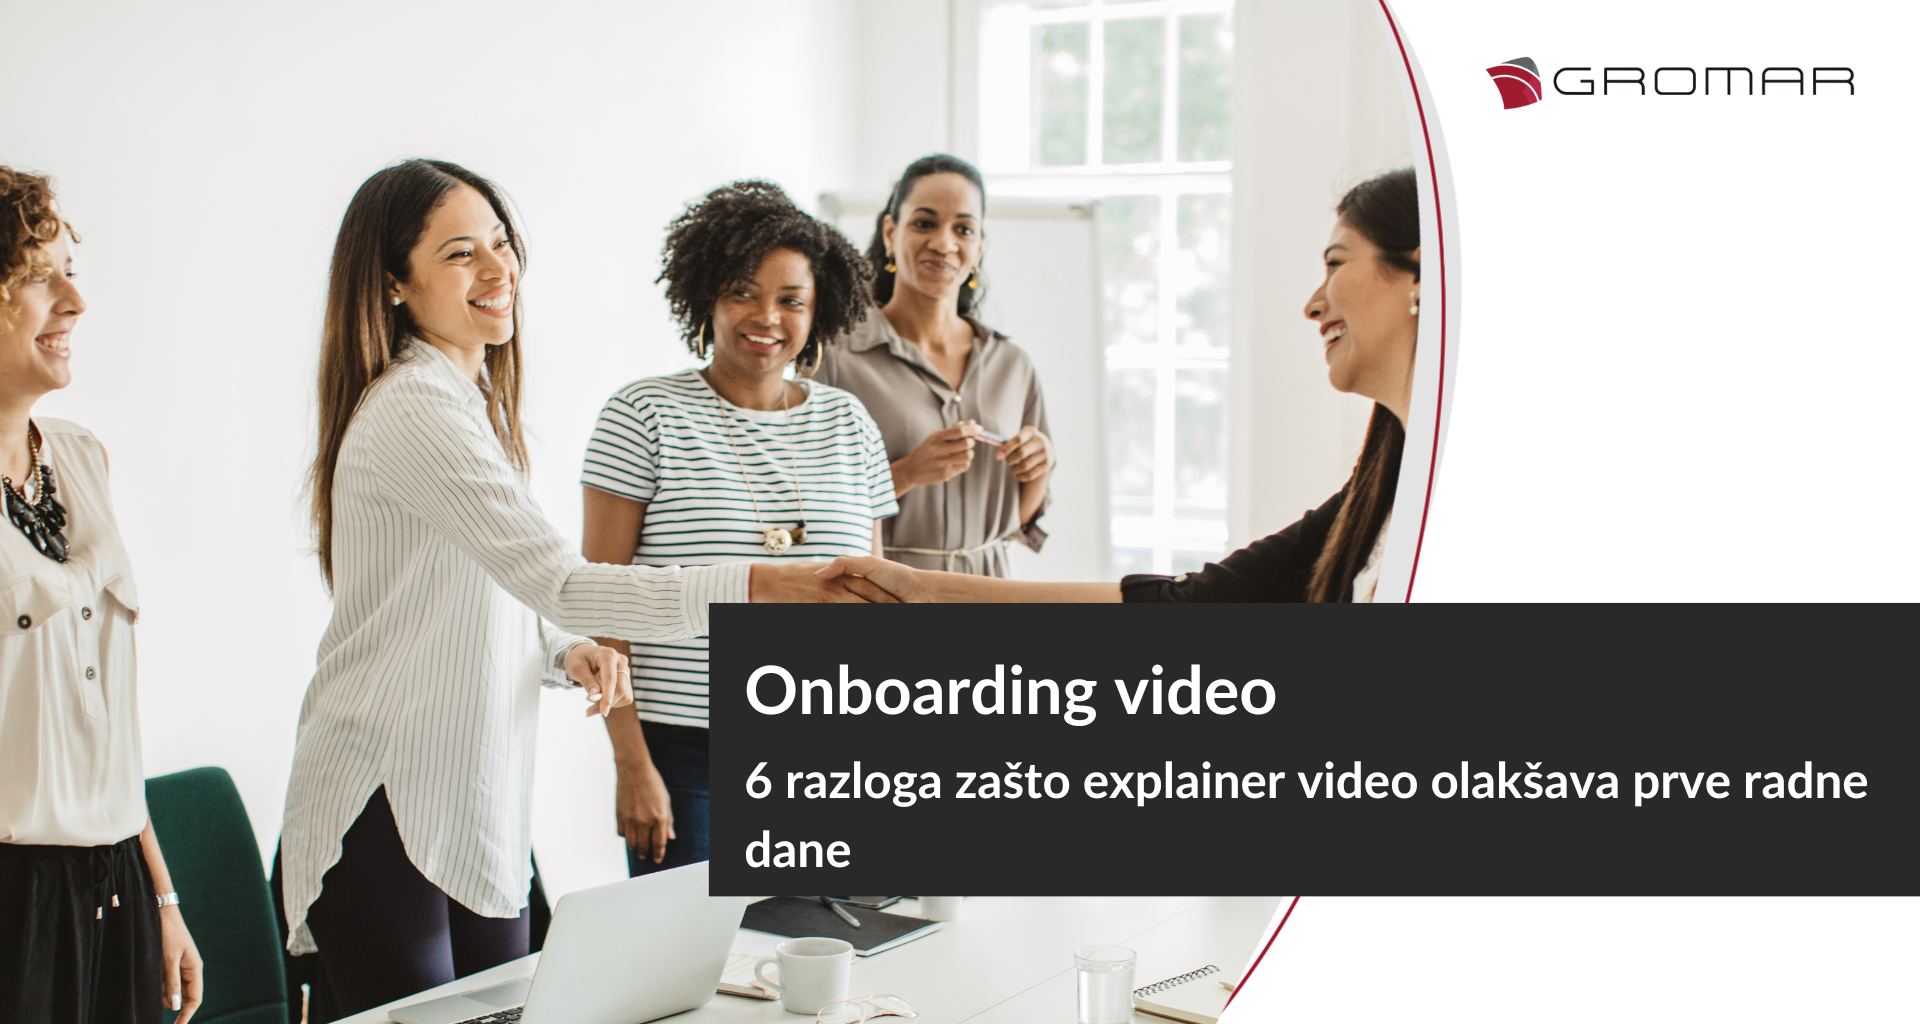 Onboarding video: 6 razloga zašto explainer video olakšava prve radne dane